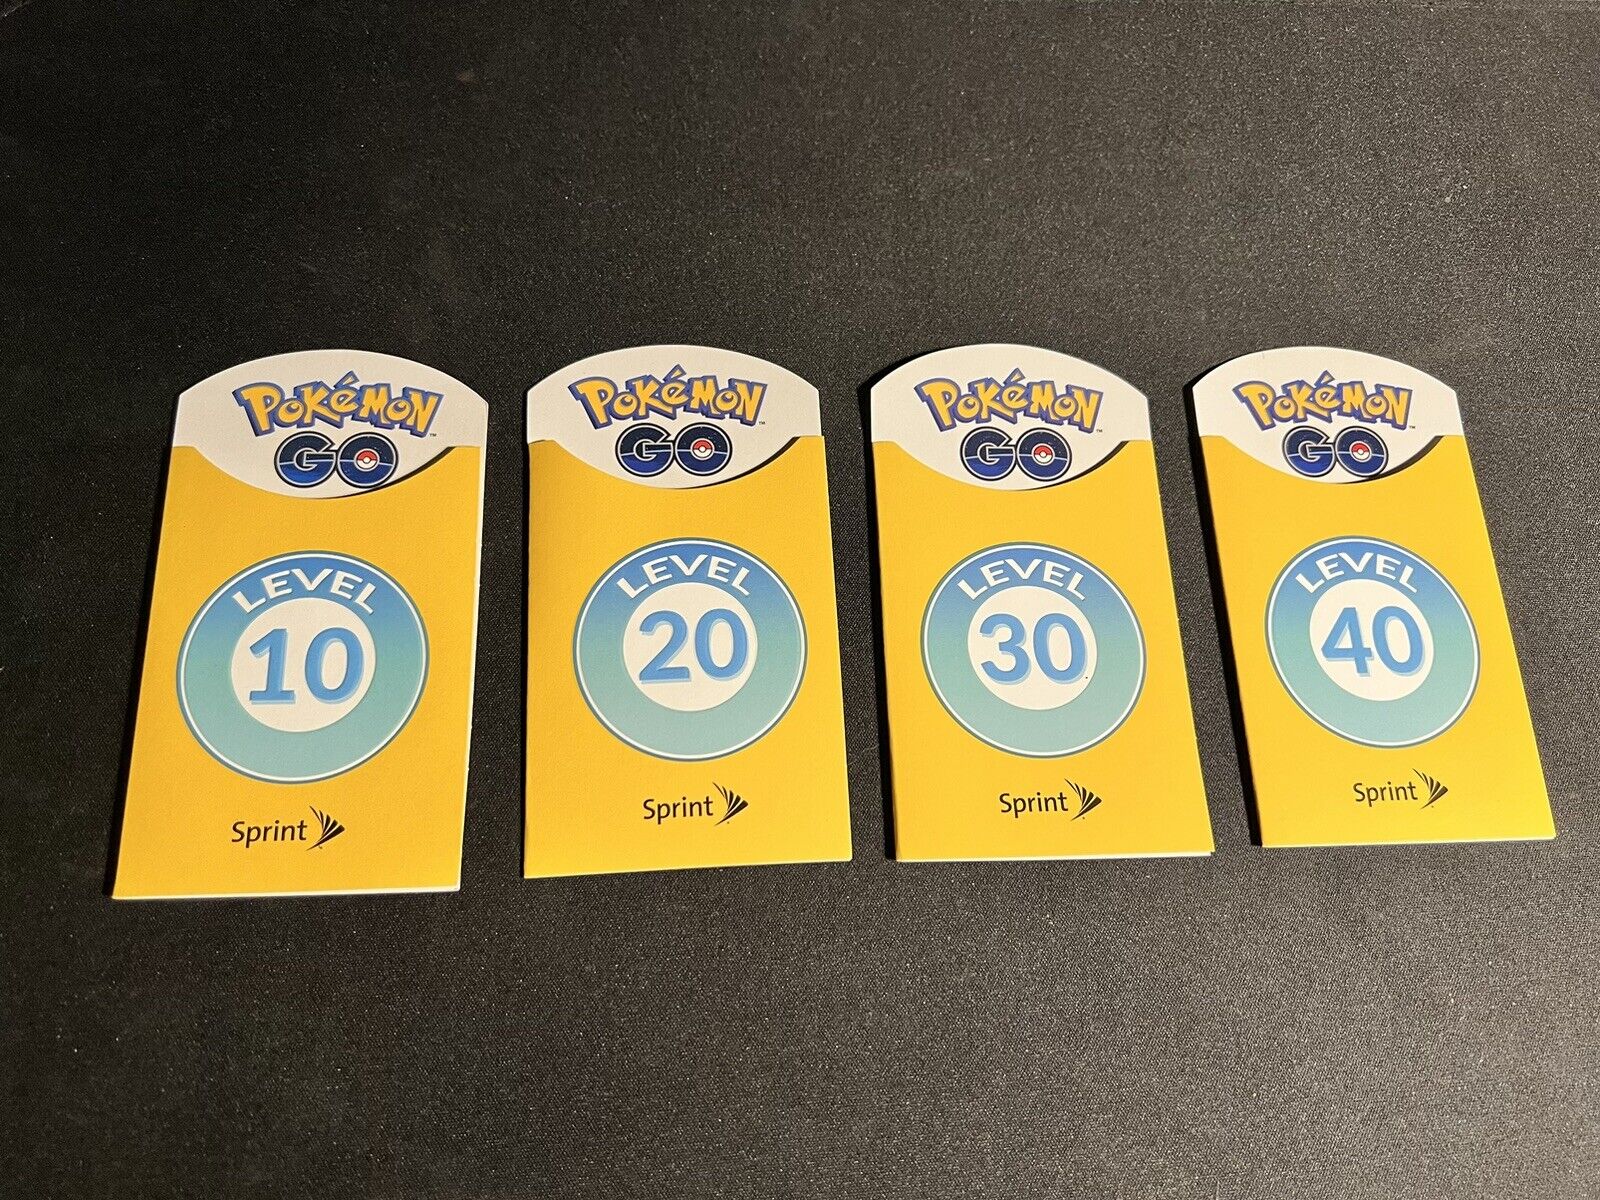 Pokémon Go Sprint Trainer Badges Full Set Level 10 - 40 Limited Brand New